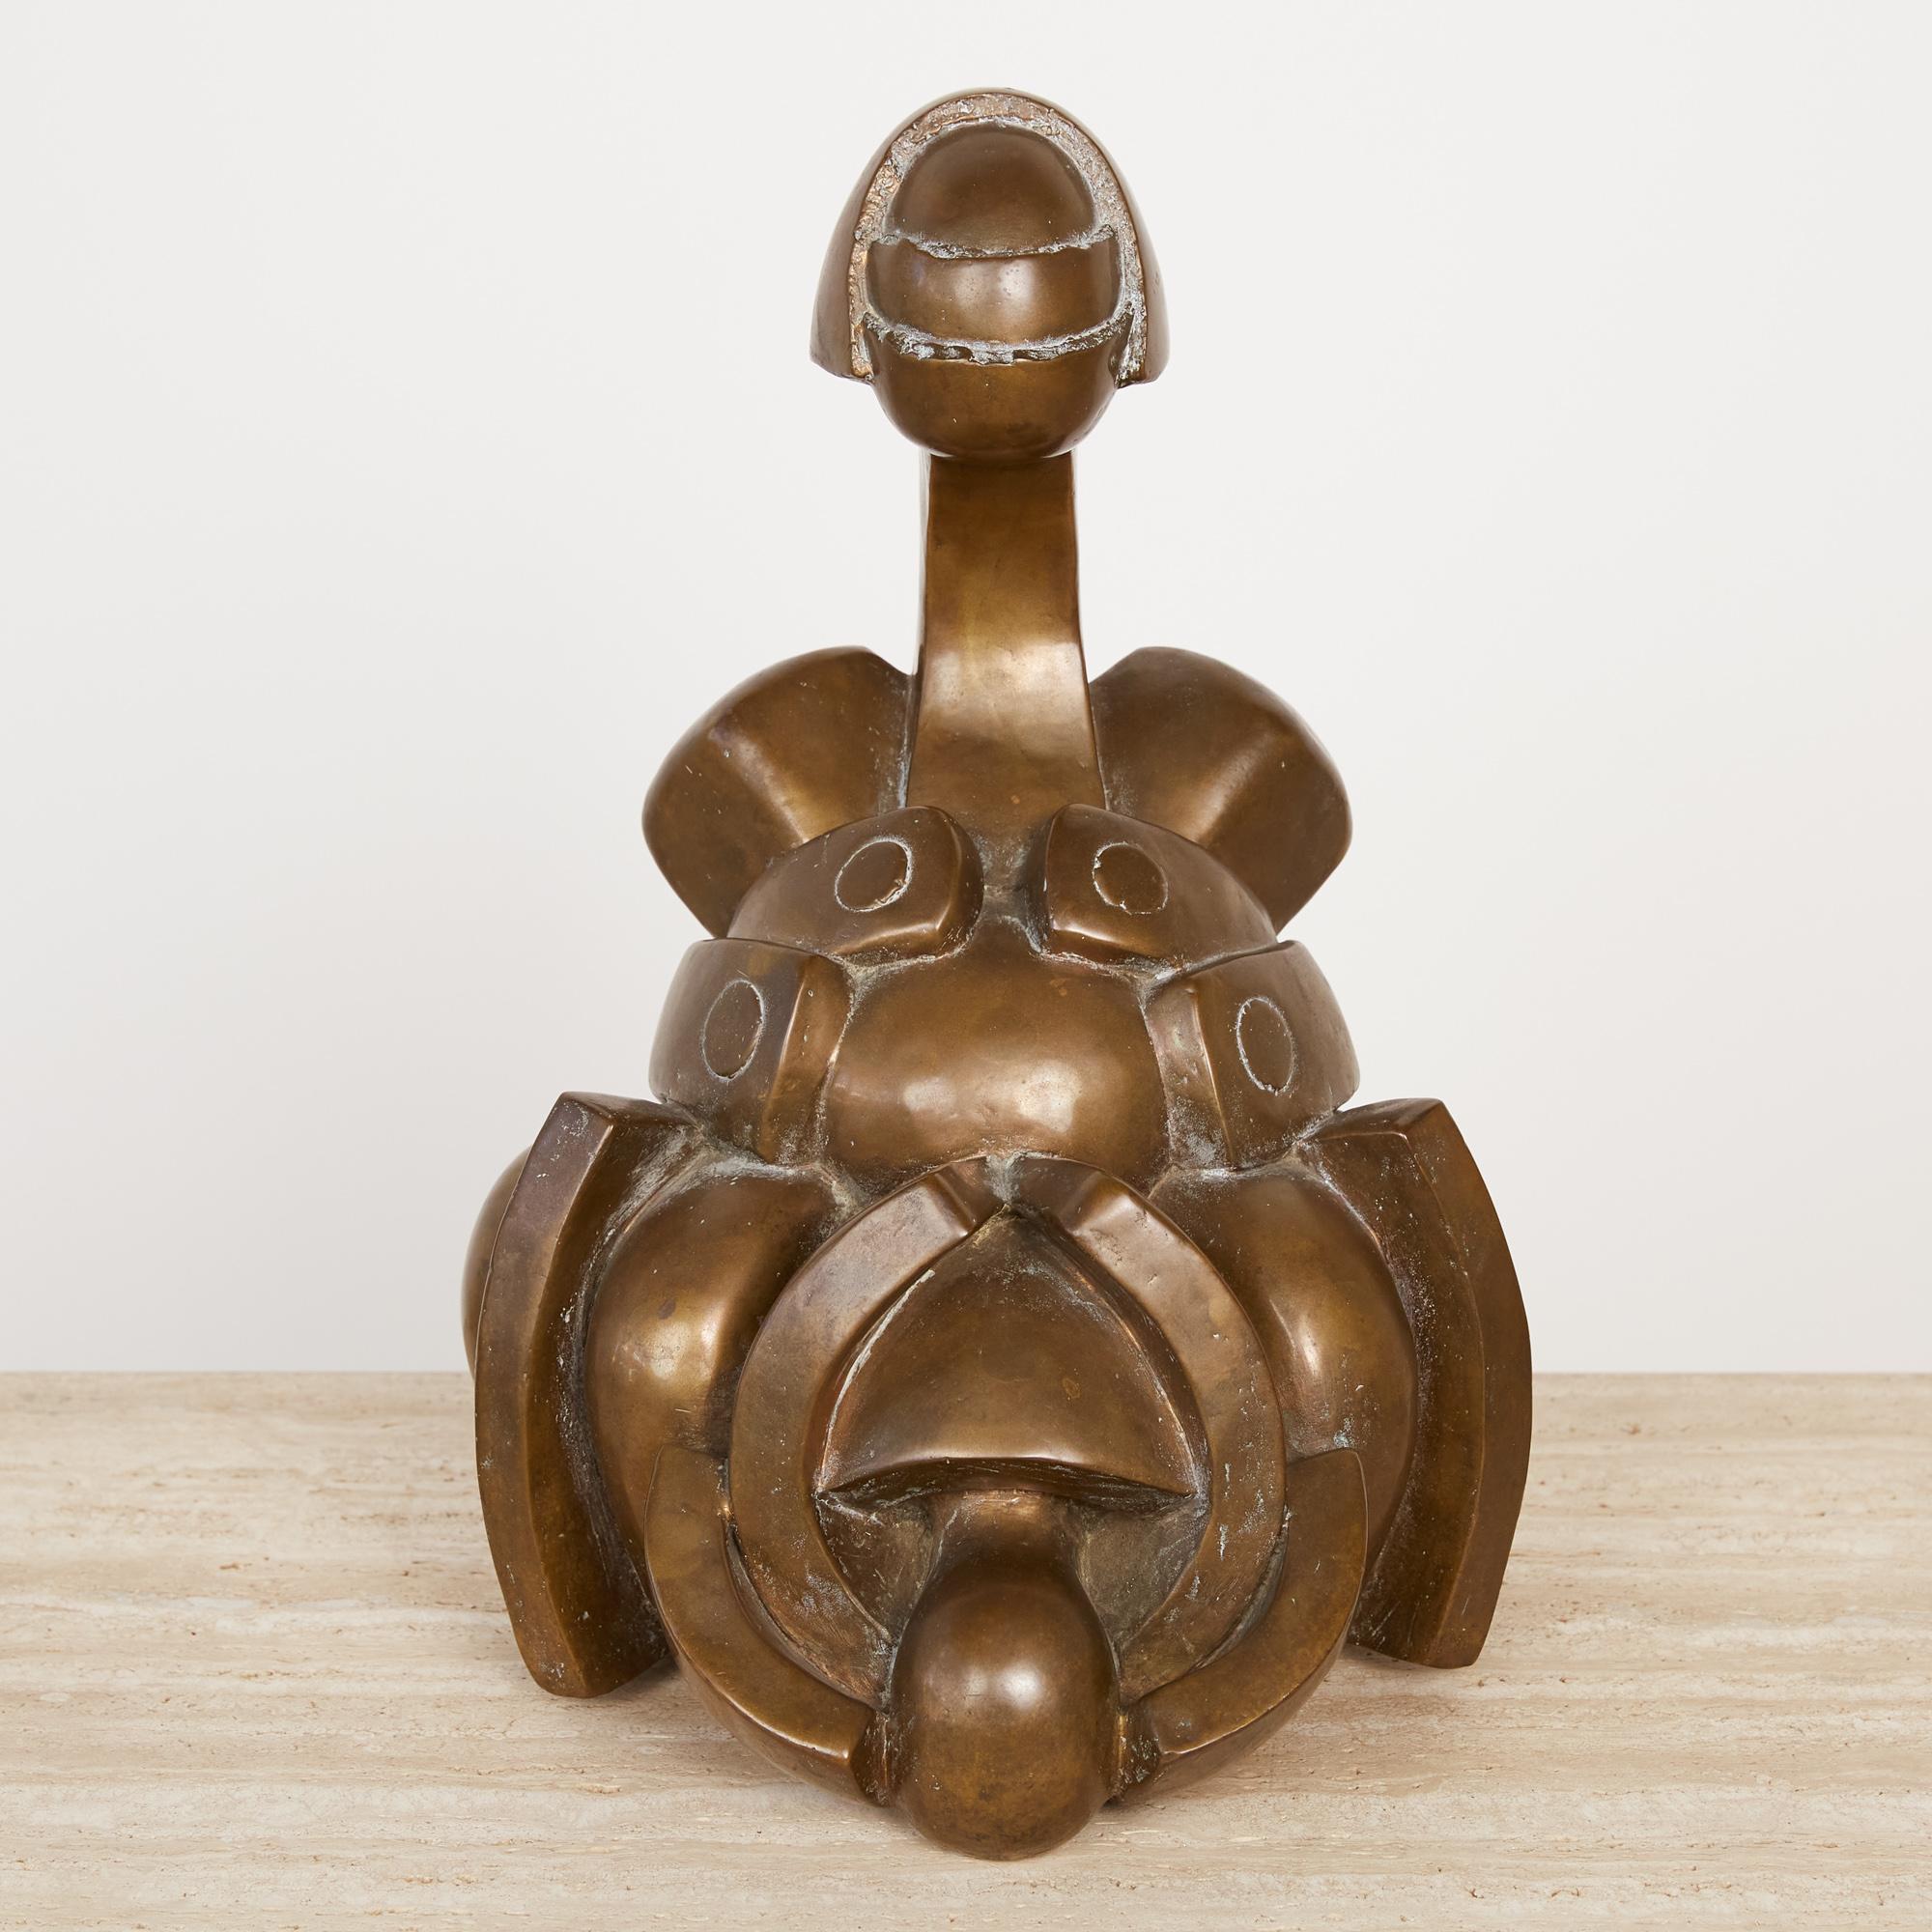 Une sculpture biomorphique en bronze coulé de l'artiste espagnol Camilo Otero. Créée selon la méthode de la fonte à la cire perdue, la figurine présente une coque extérieure dimensionnelle dont les couches, semblables à des doigts, se superposent à